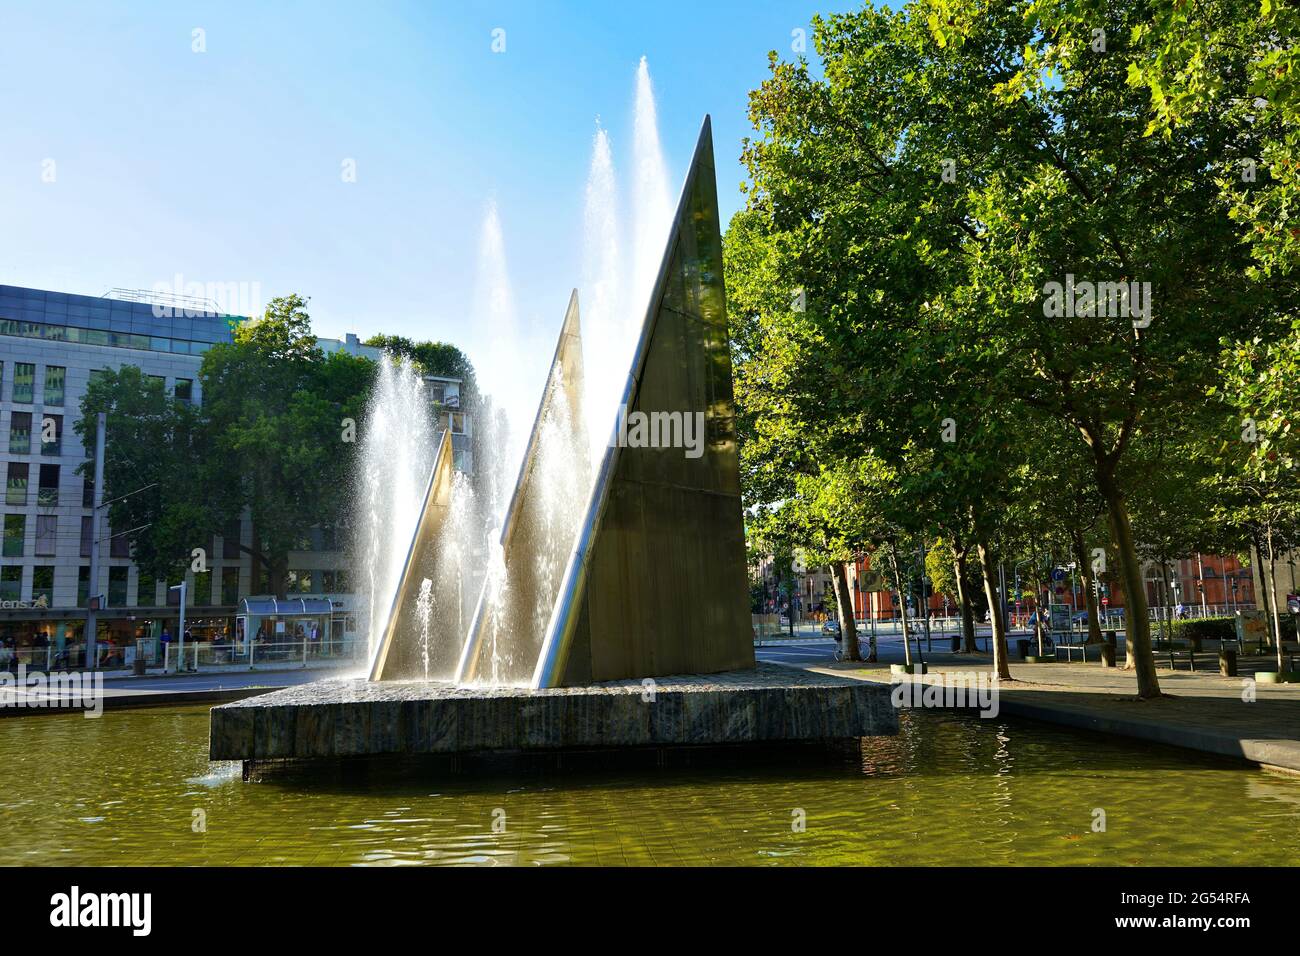 Der Three Sail Fountain / Mack Fountain von Bildhauer Heinz Mack mit glitzerndem Wasser im Hintergrund. Es wurde von 1986 - 1988 gebaut. Stockfoto